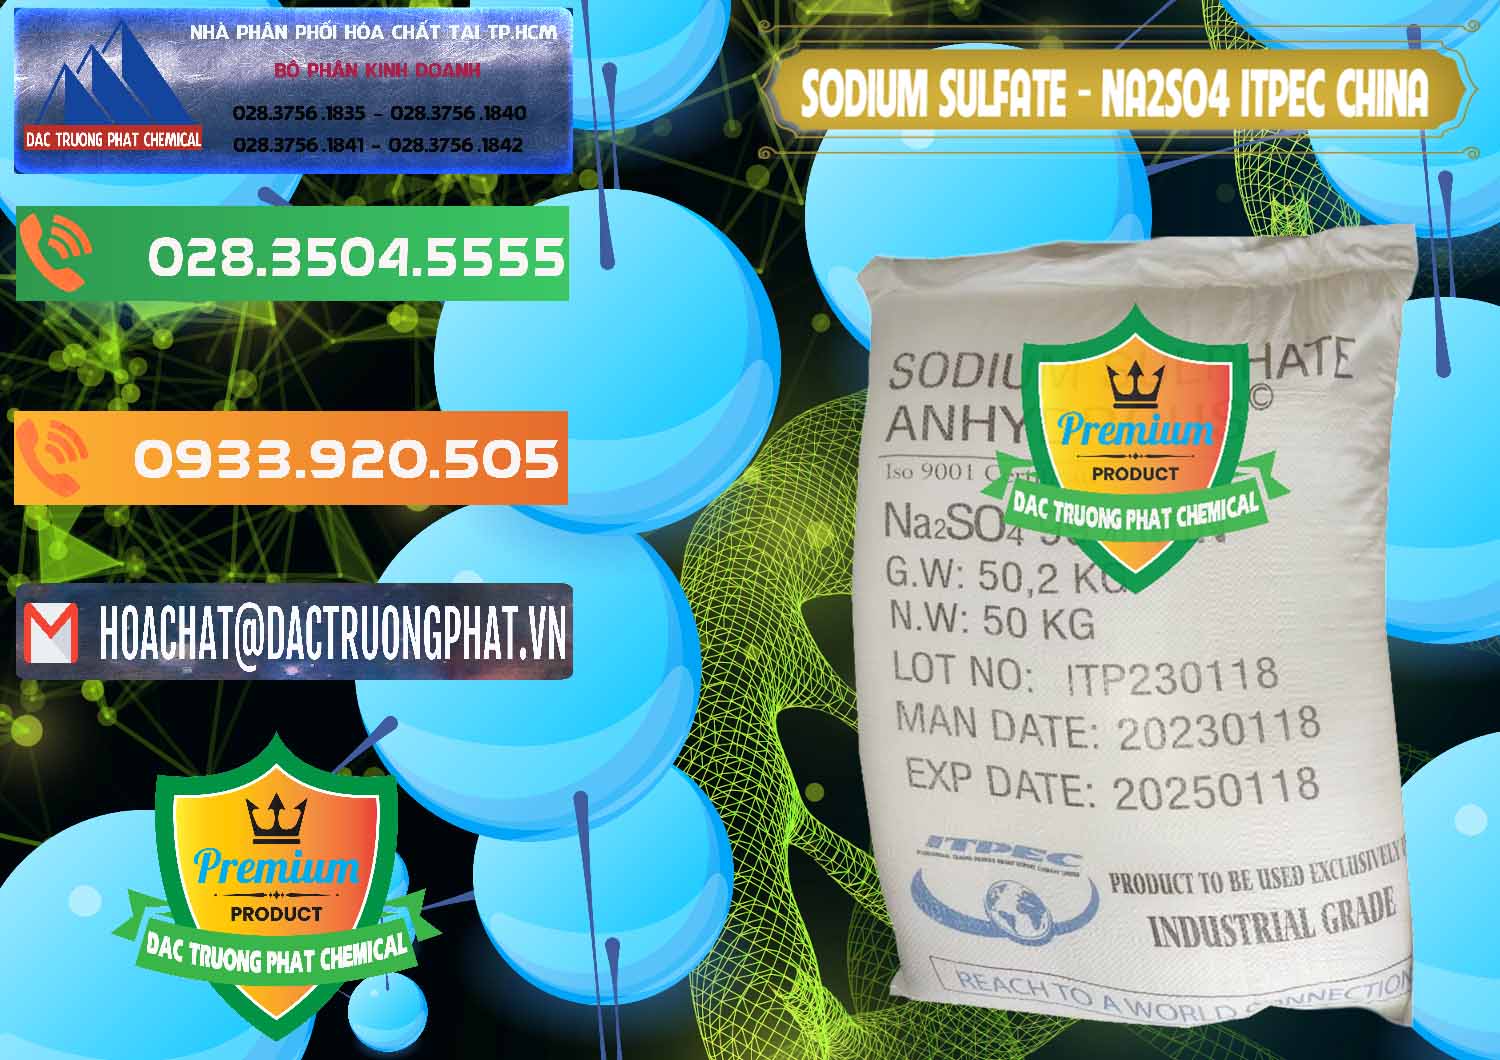 Nơi chuyên bán ( cung cấp ) Sodium Sulphate - Muối Sunfat Na2SO4 ITPEC Trung Quốc China - 0340 - Nhà phân phối - kinh doanh hóa chất tại TP.HCM - hoachatxulynuoc.com.vn